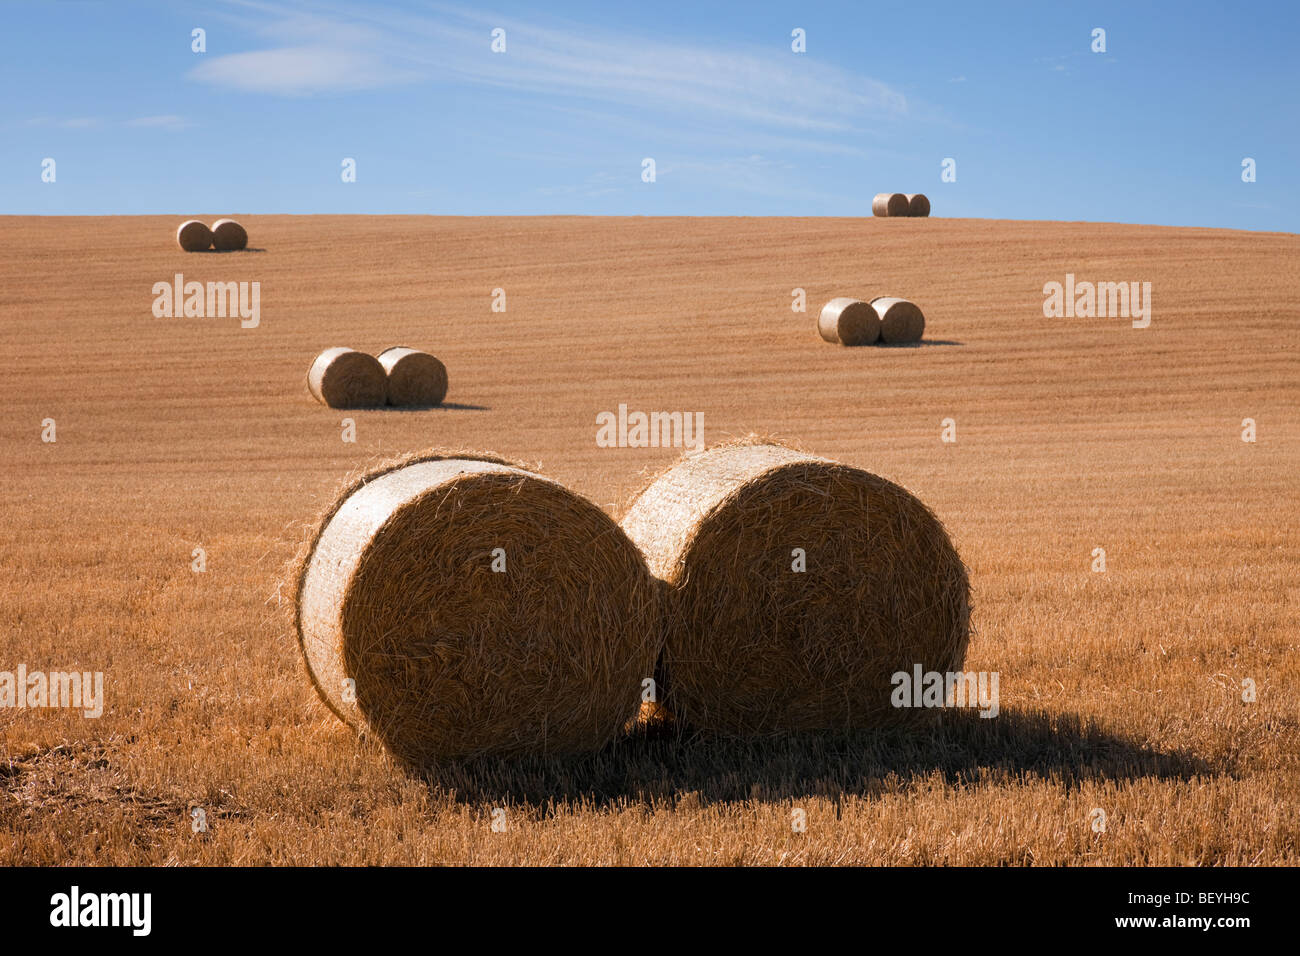 Escenario del país pares de pacas redondas de paja en un campo de trigo cosechado en tierras agrícolas durante la temporada de cosecha de septiembre a finales del verano. Escocia Reino Unido Gran Bretaña Foto de stock